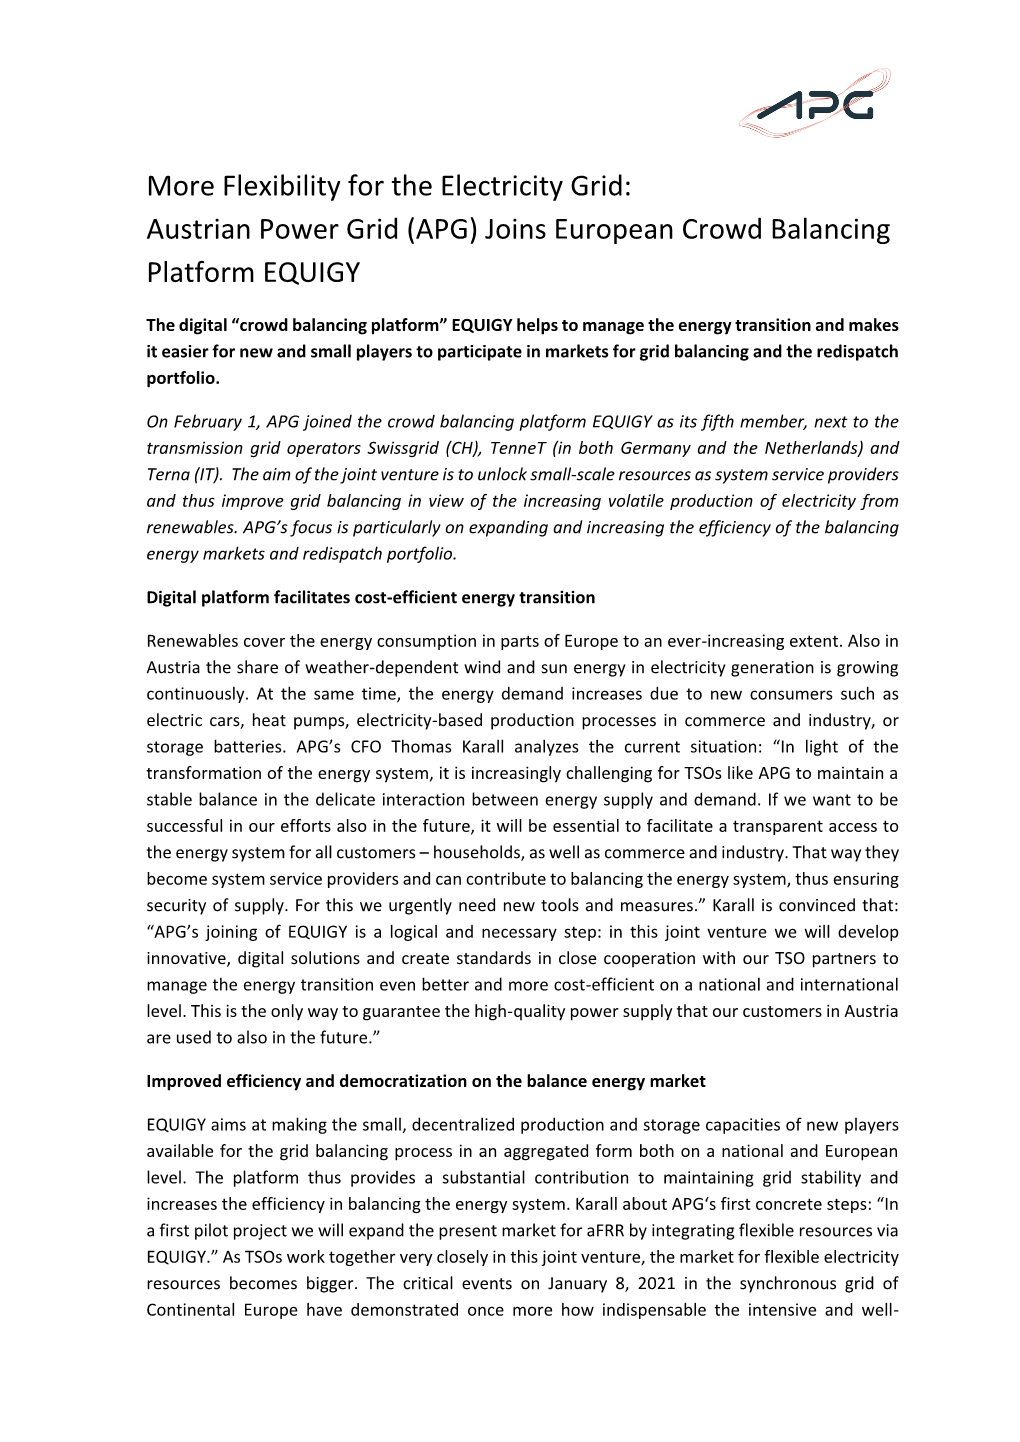 (APG) Joins European Crowd Balancing Platform EQUIGY